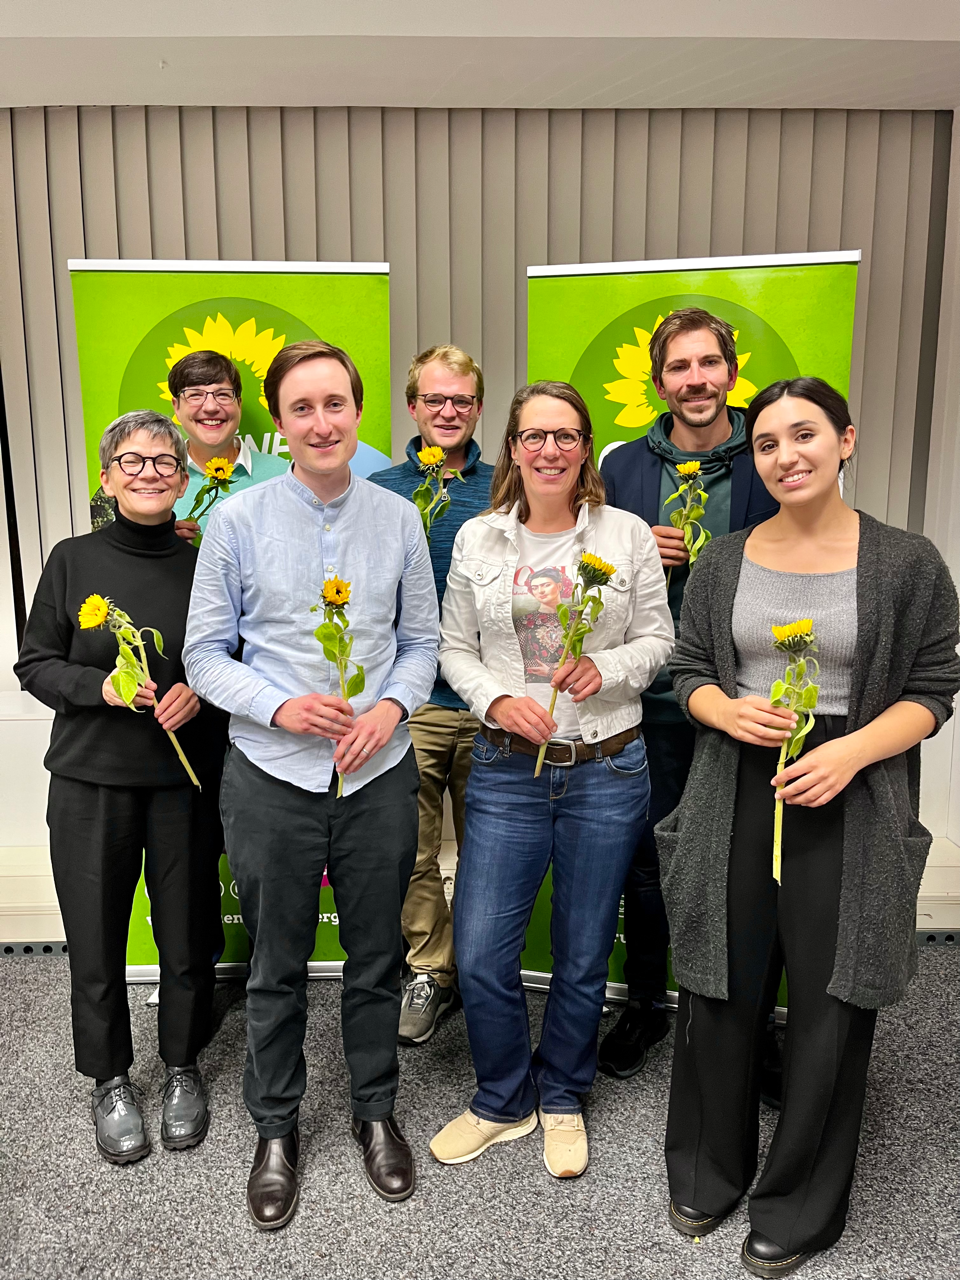 Die Mitglieder des neuen Stadtvorstands von Grünes Bamberg stehen vor zwei grünen Aufstellern mit Sonnenblume. In ihren Händen halten sie Sonnenblumen.